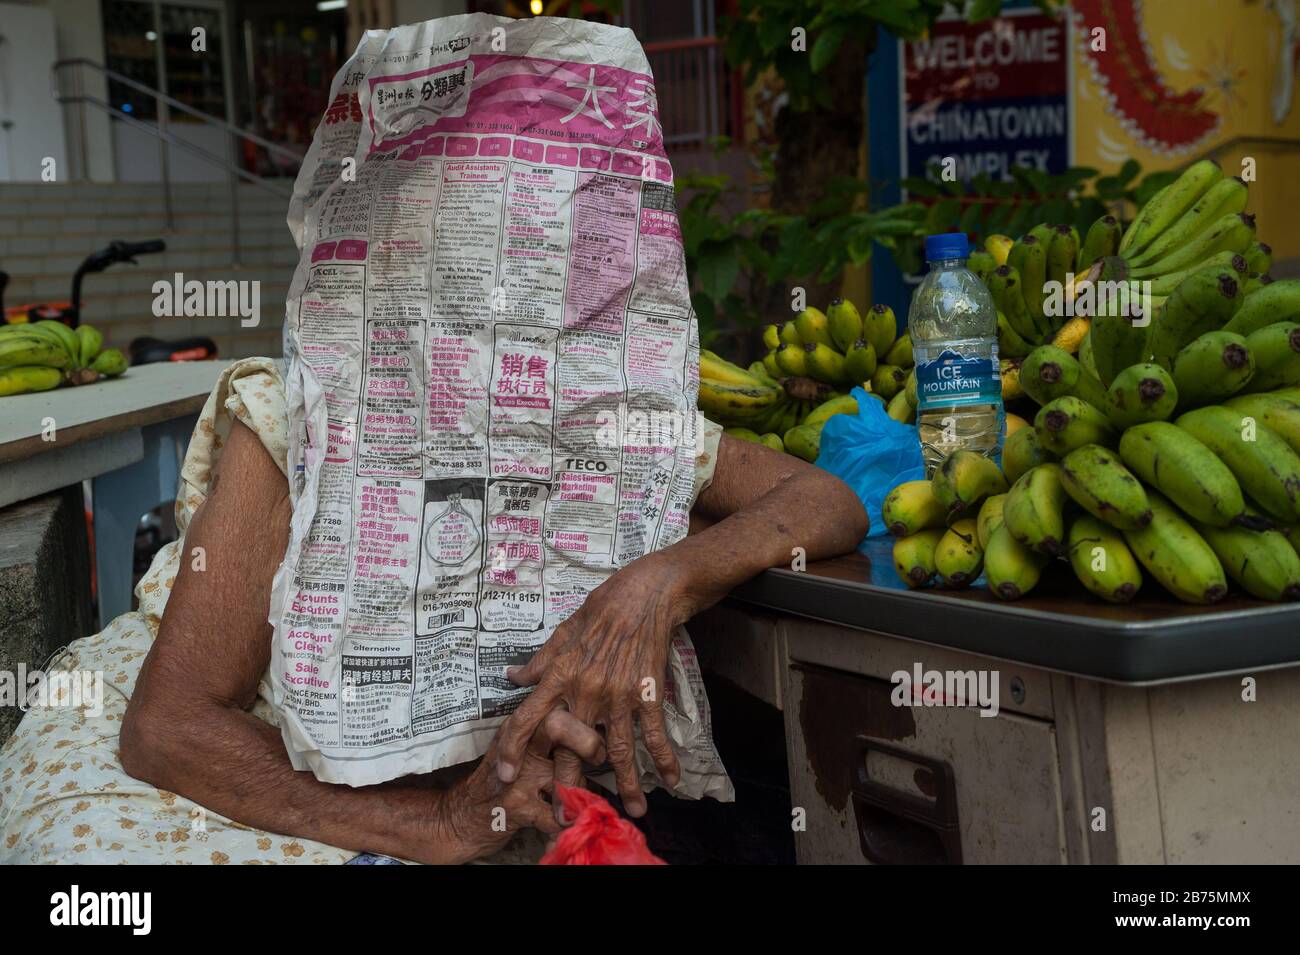 03.11.2017, Singapore, Repubblica di Singapore, Asia - una vecchia donna che vende banane nel quartiere cinese di Singapore si nasconde dietro un giornale. [traduzione automatica] Foto Stock